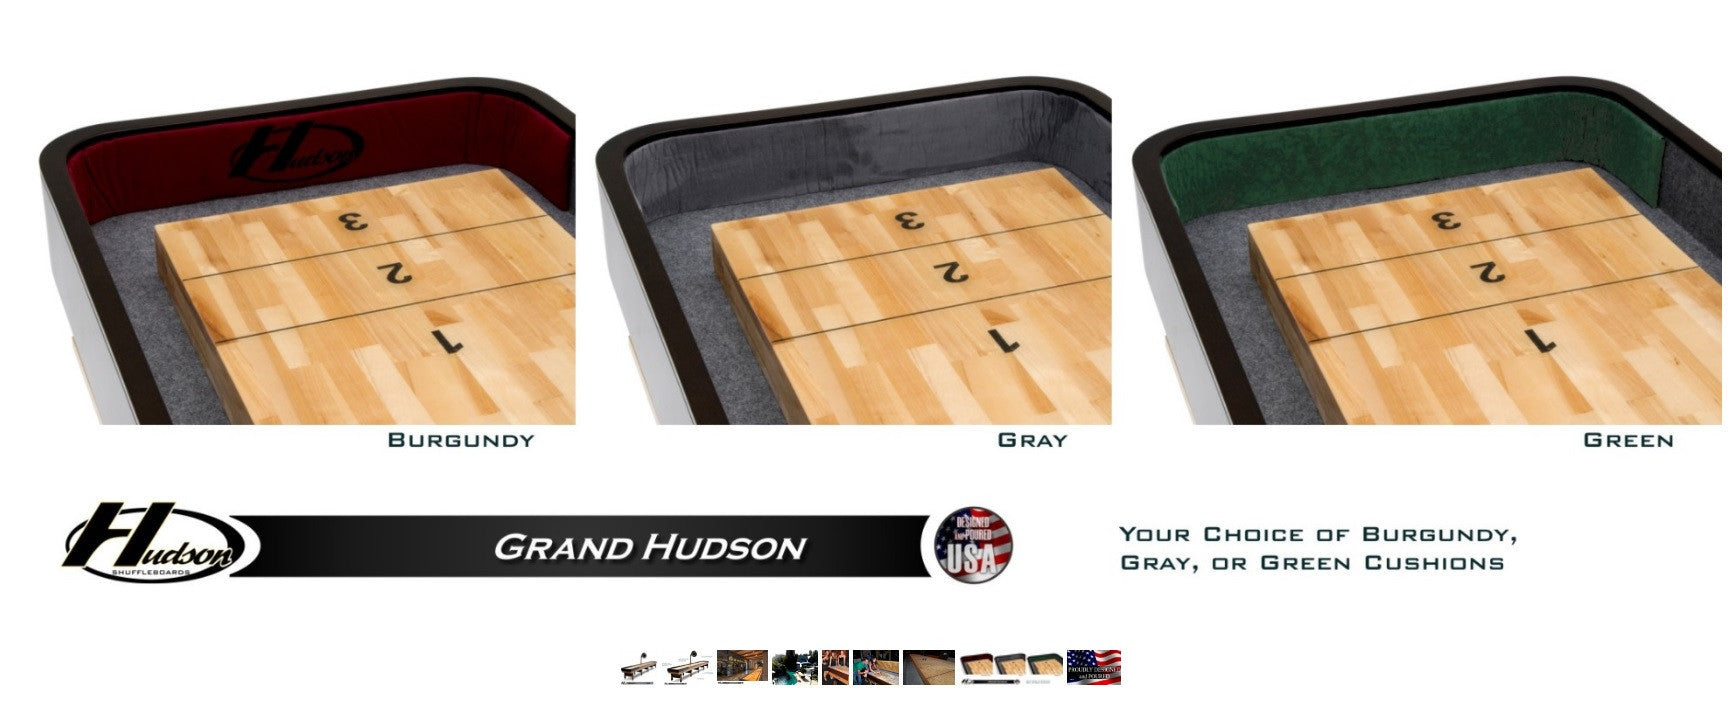 Hudson 22' Grand Hudson Shuffleboard